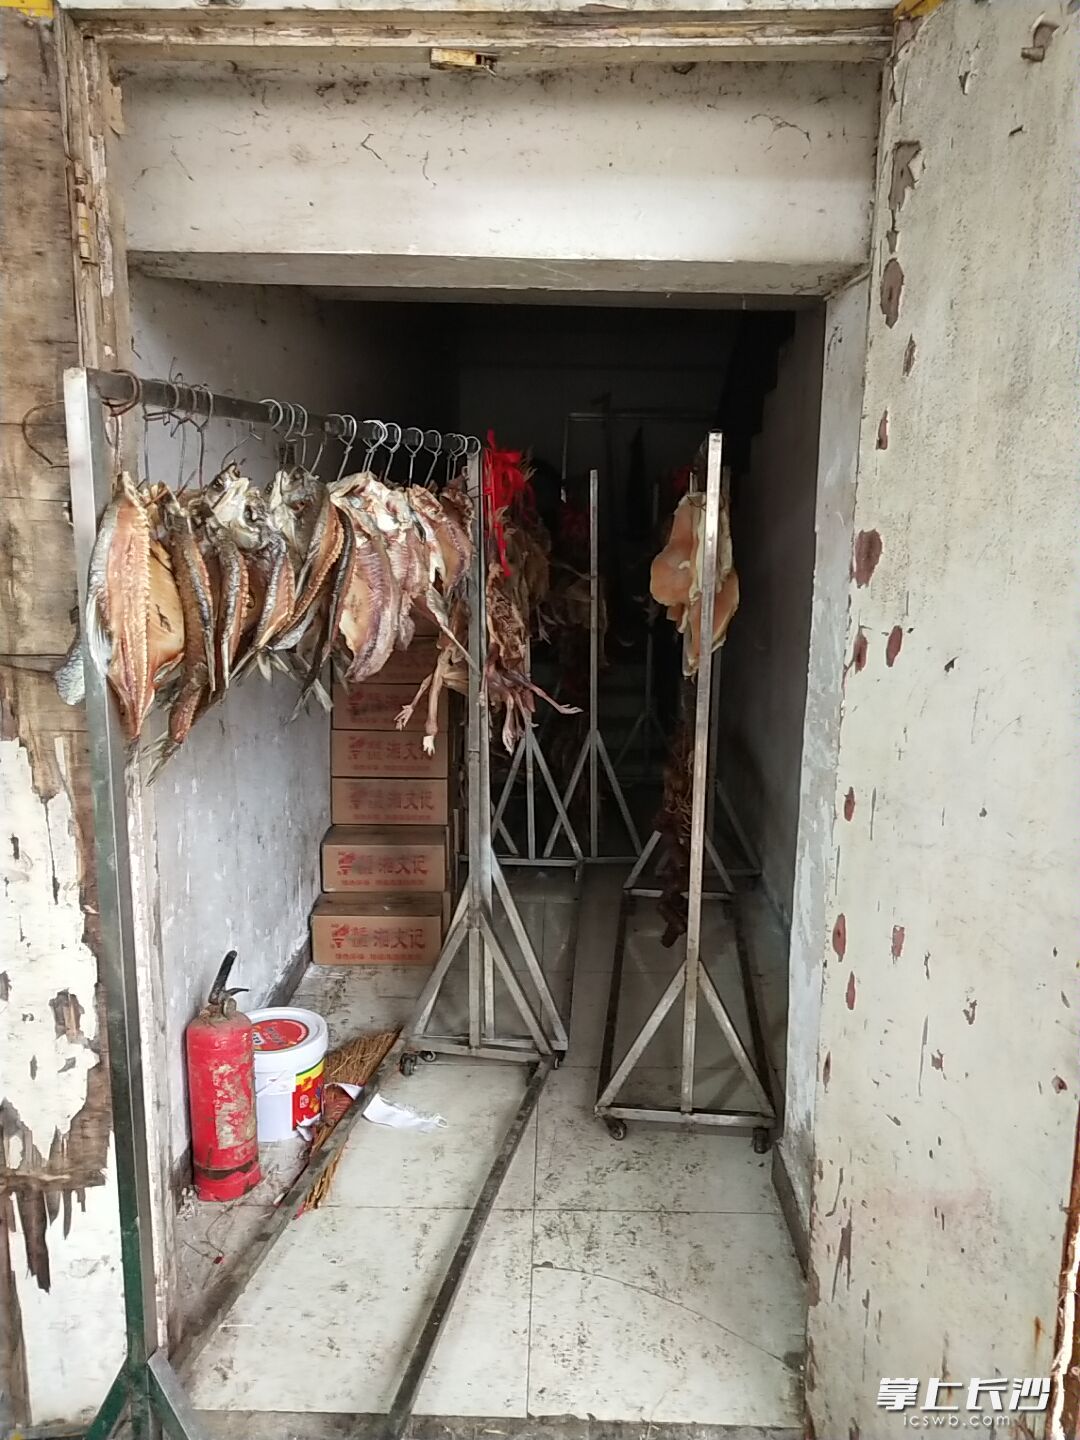 湘村柴房湘菜馆后厨的应急疏散通道和楼梯处均存放了众多腊制品和熏制设备等。

